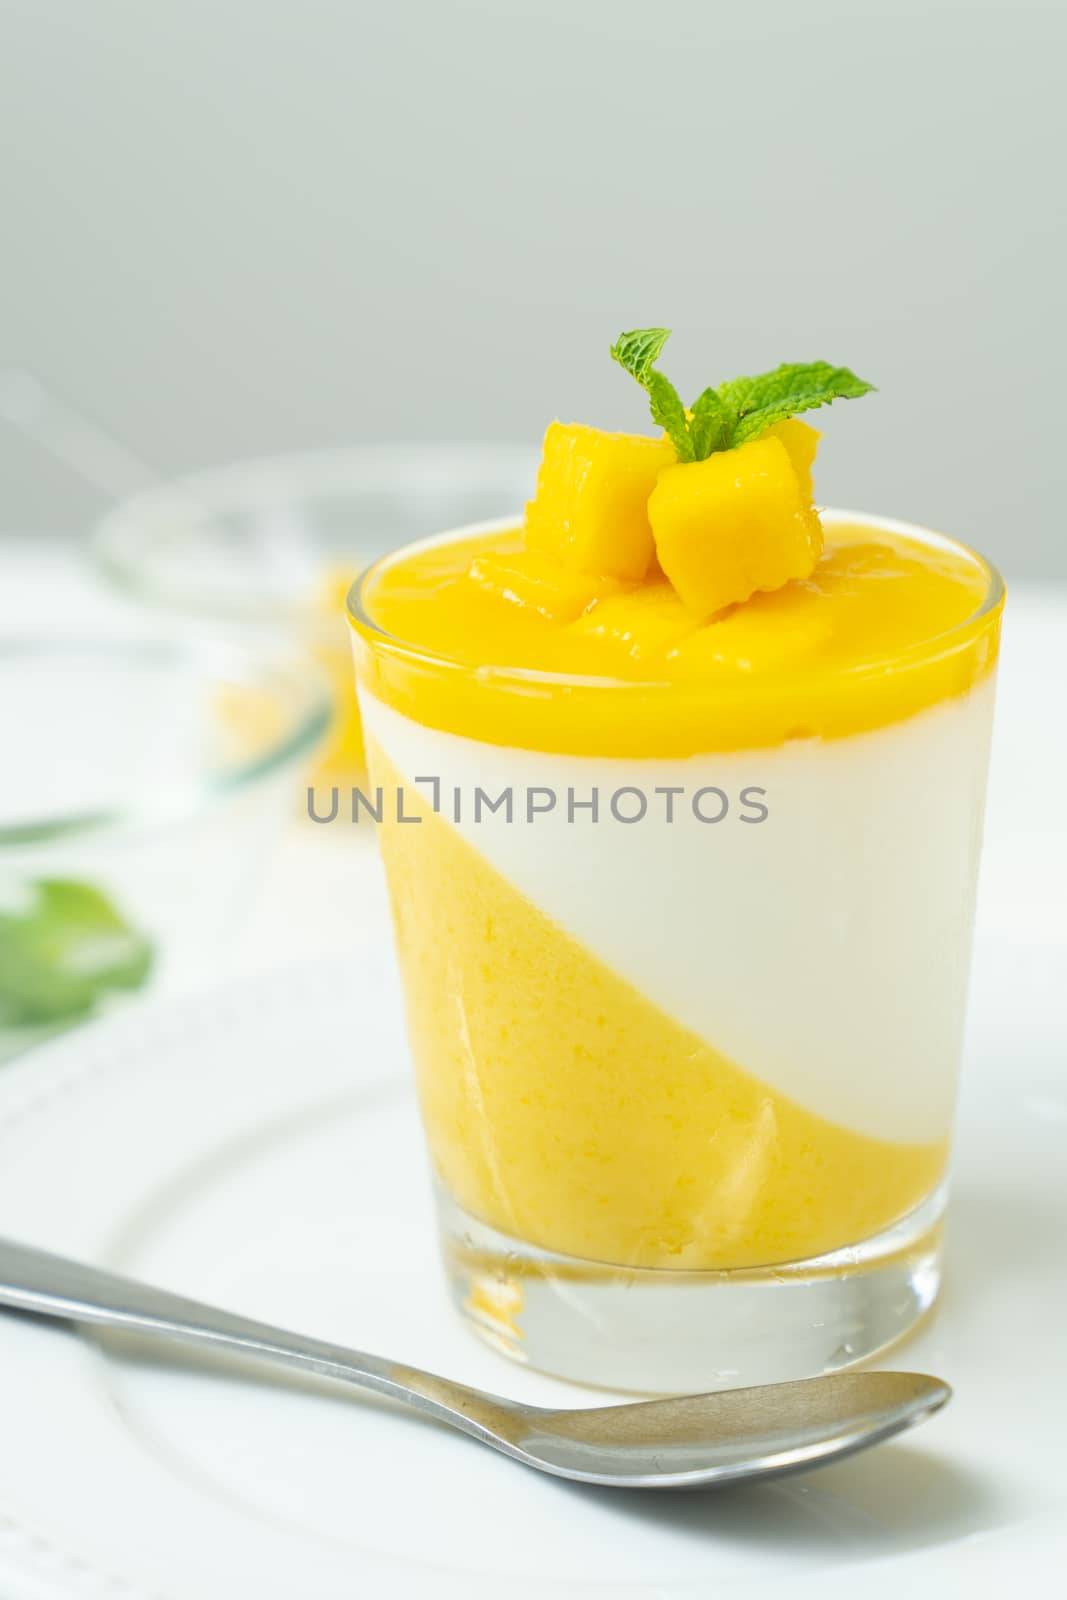 Italian dessert mango panna cotta by Kenishirotie